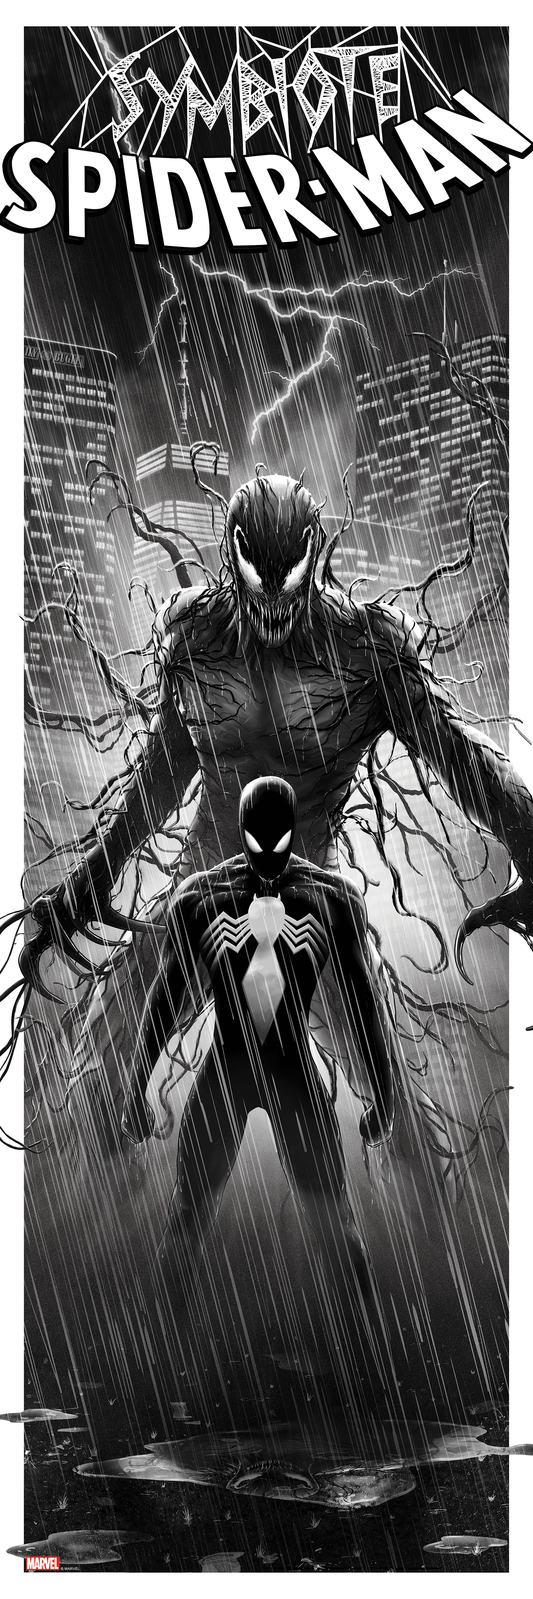 Ben Harman "Symbiote Spider-Man" B&W Variant